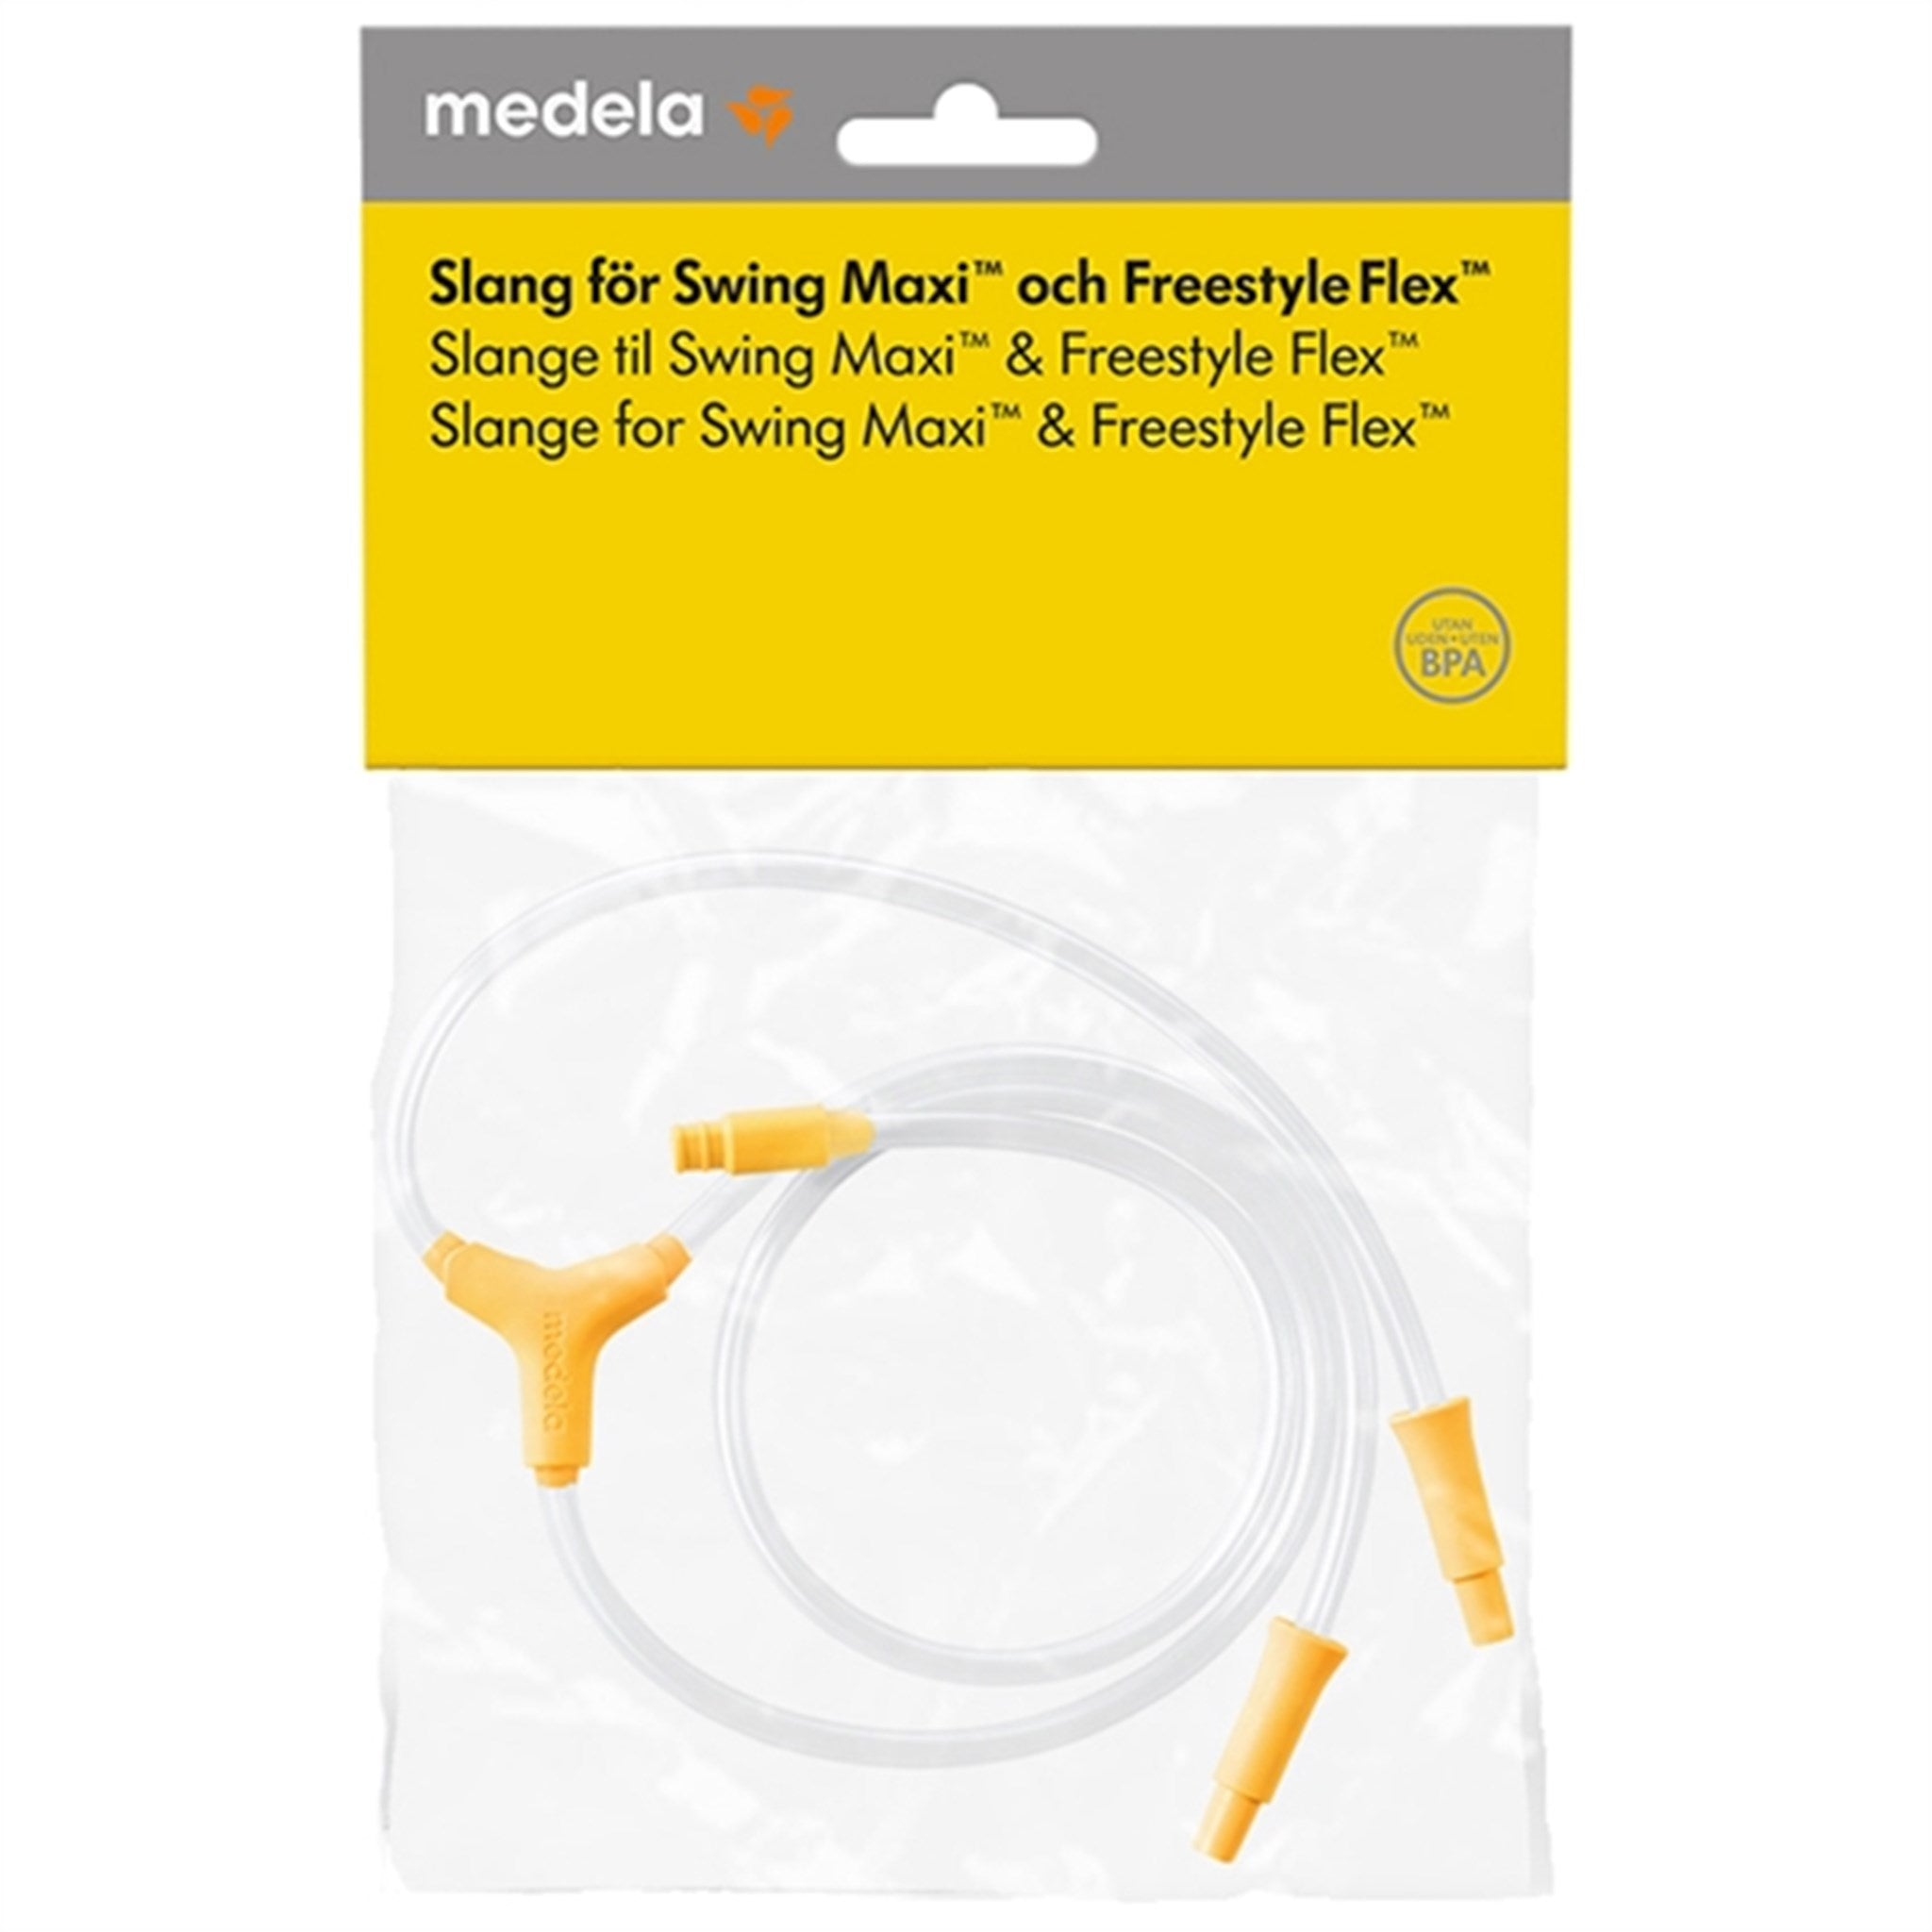 Slange for Swing Maxi och Freestyle Flex brystpumpe 2